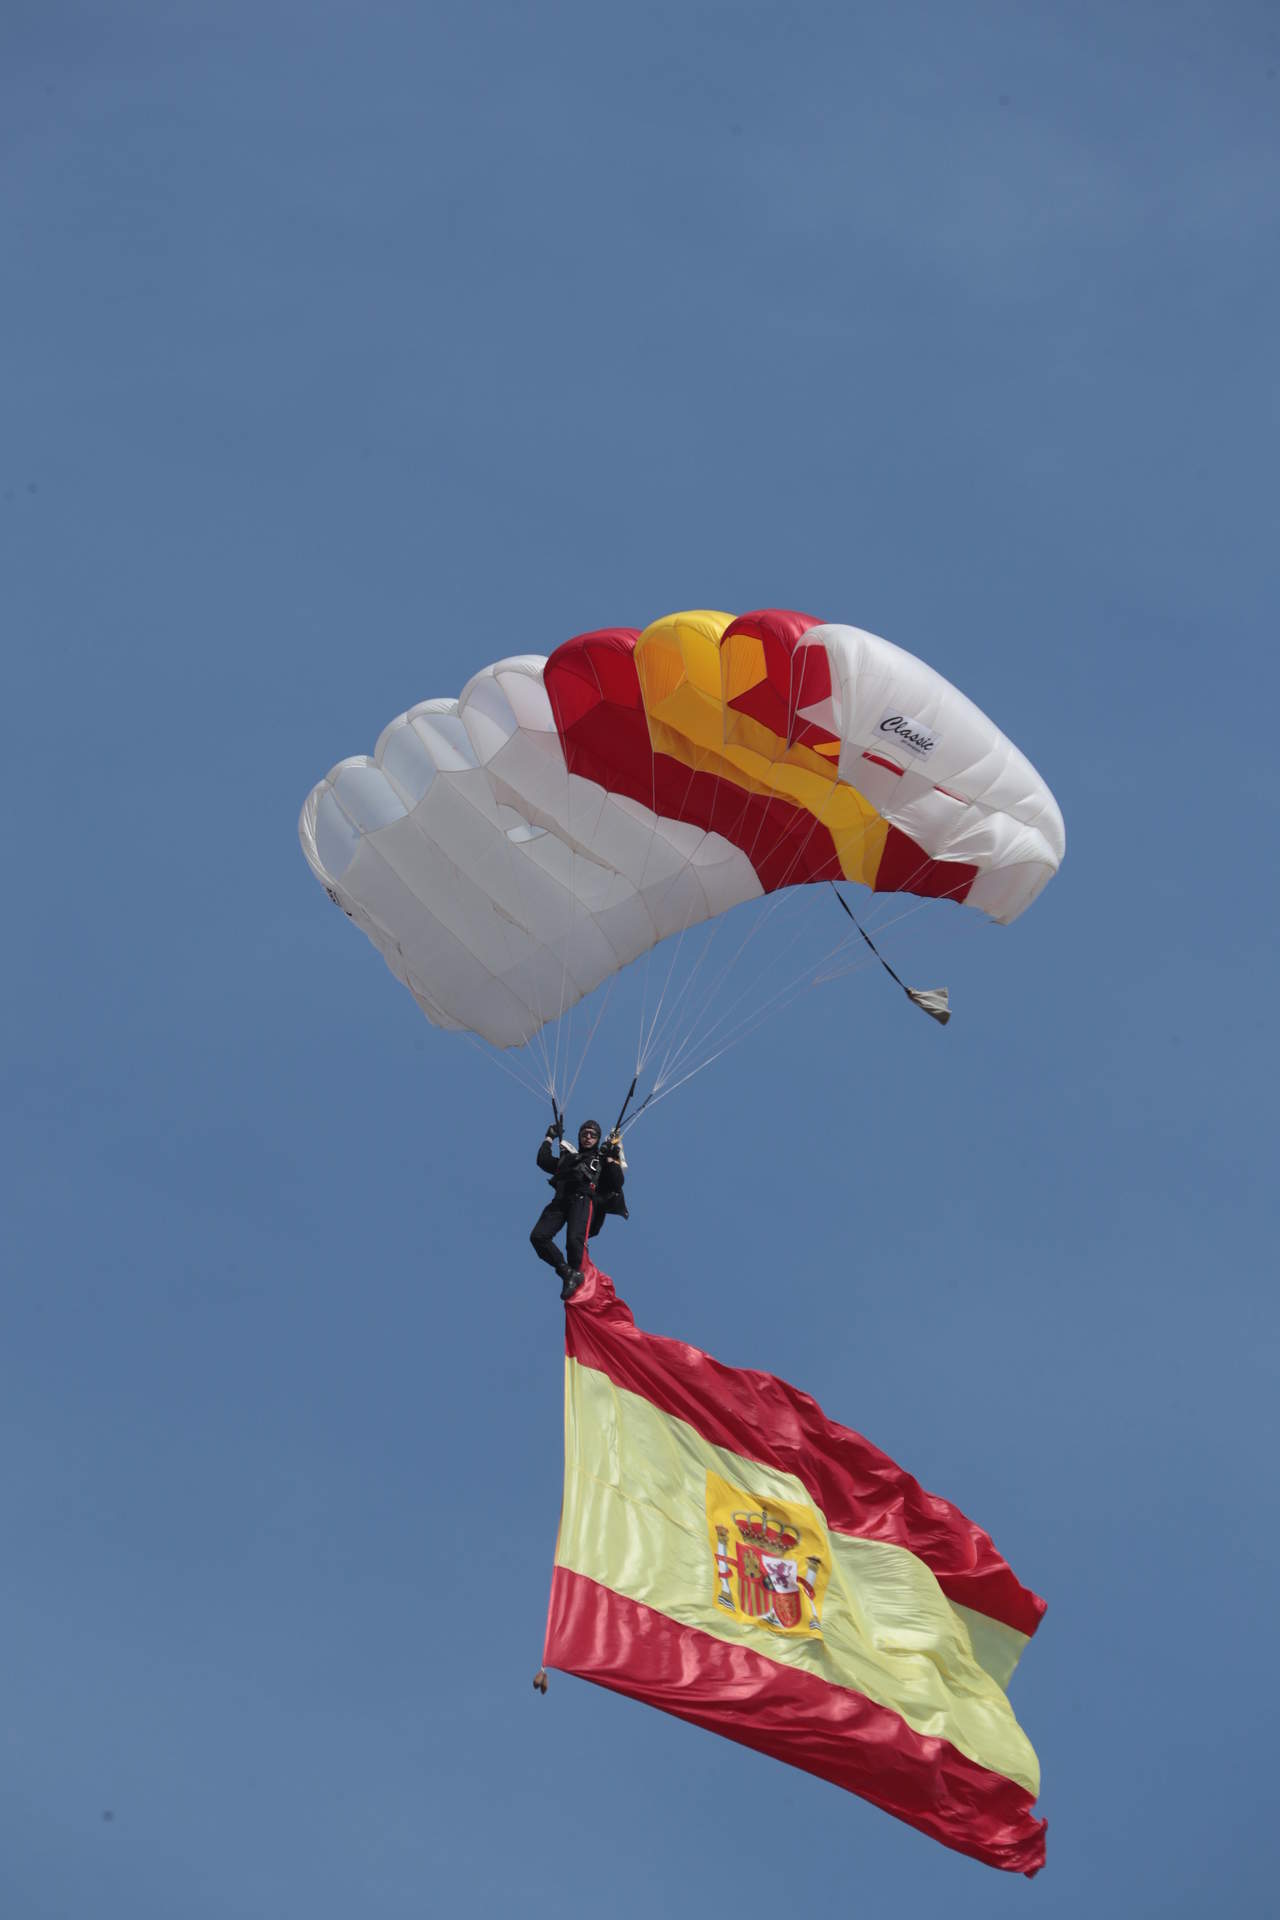 Salto paracaidista de la Bripac en febrero de 2019 (Foto: José Hontiyuelo / Ejército de Tierra DECET).